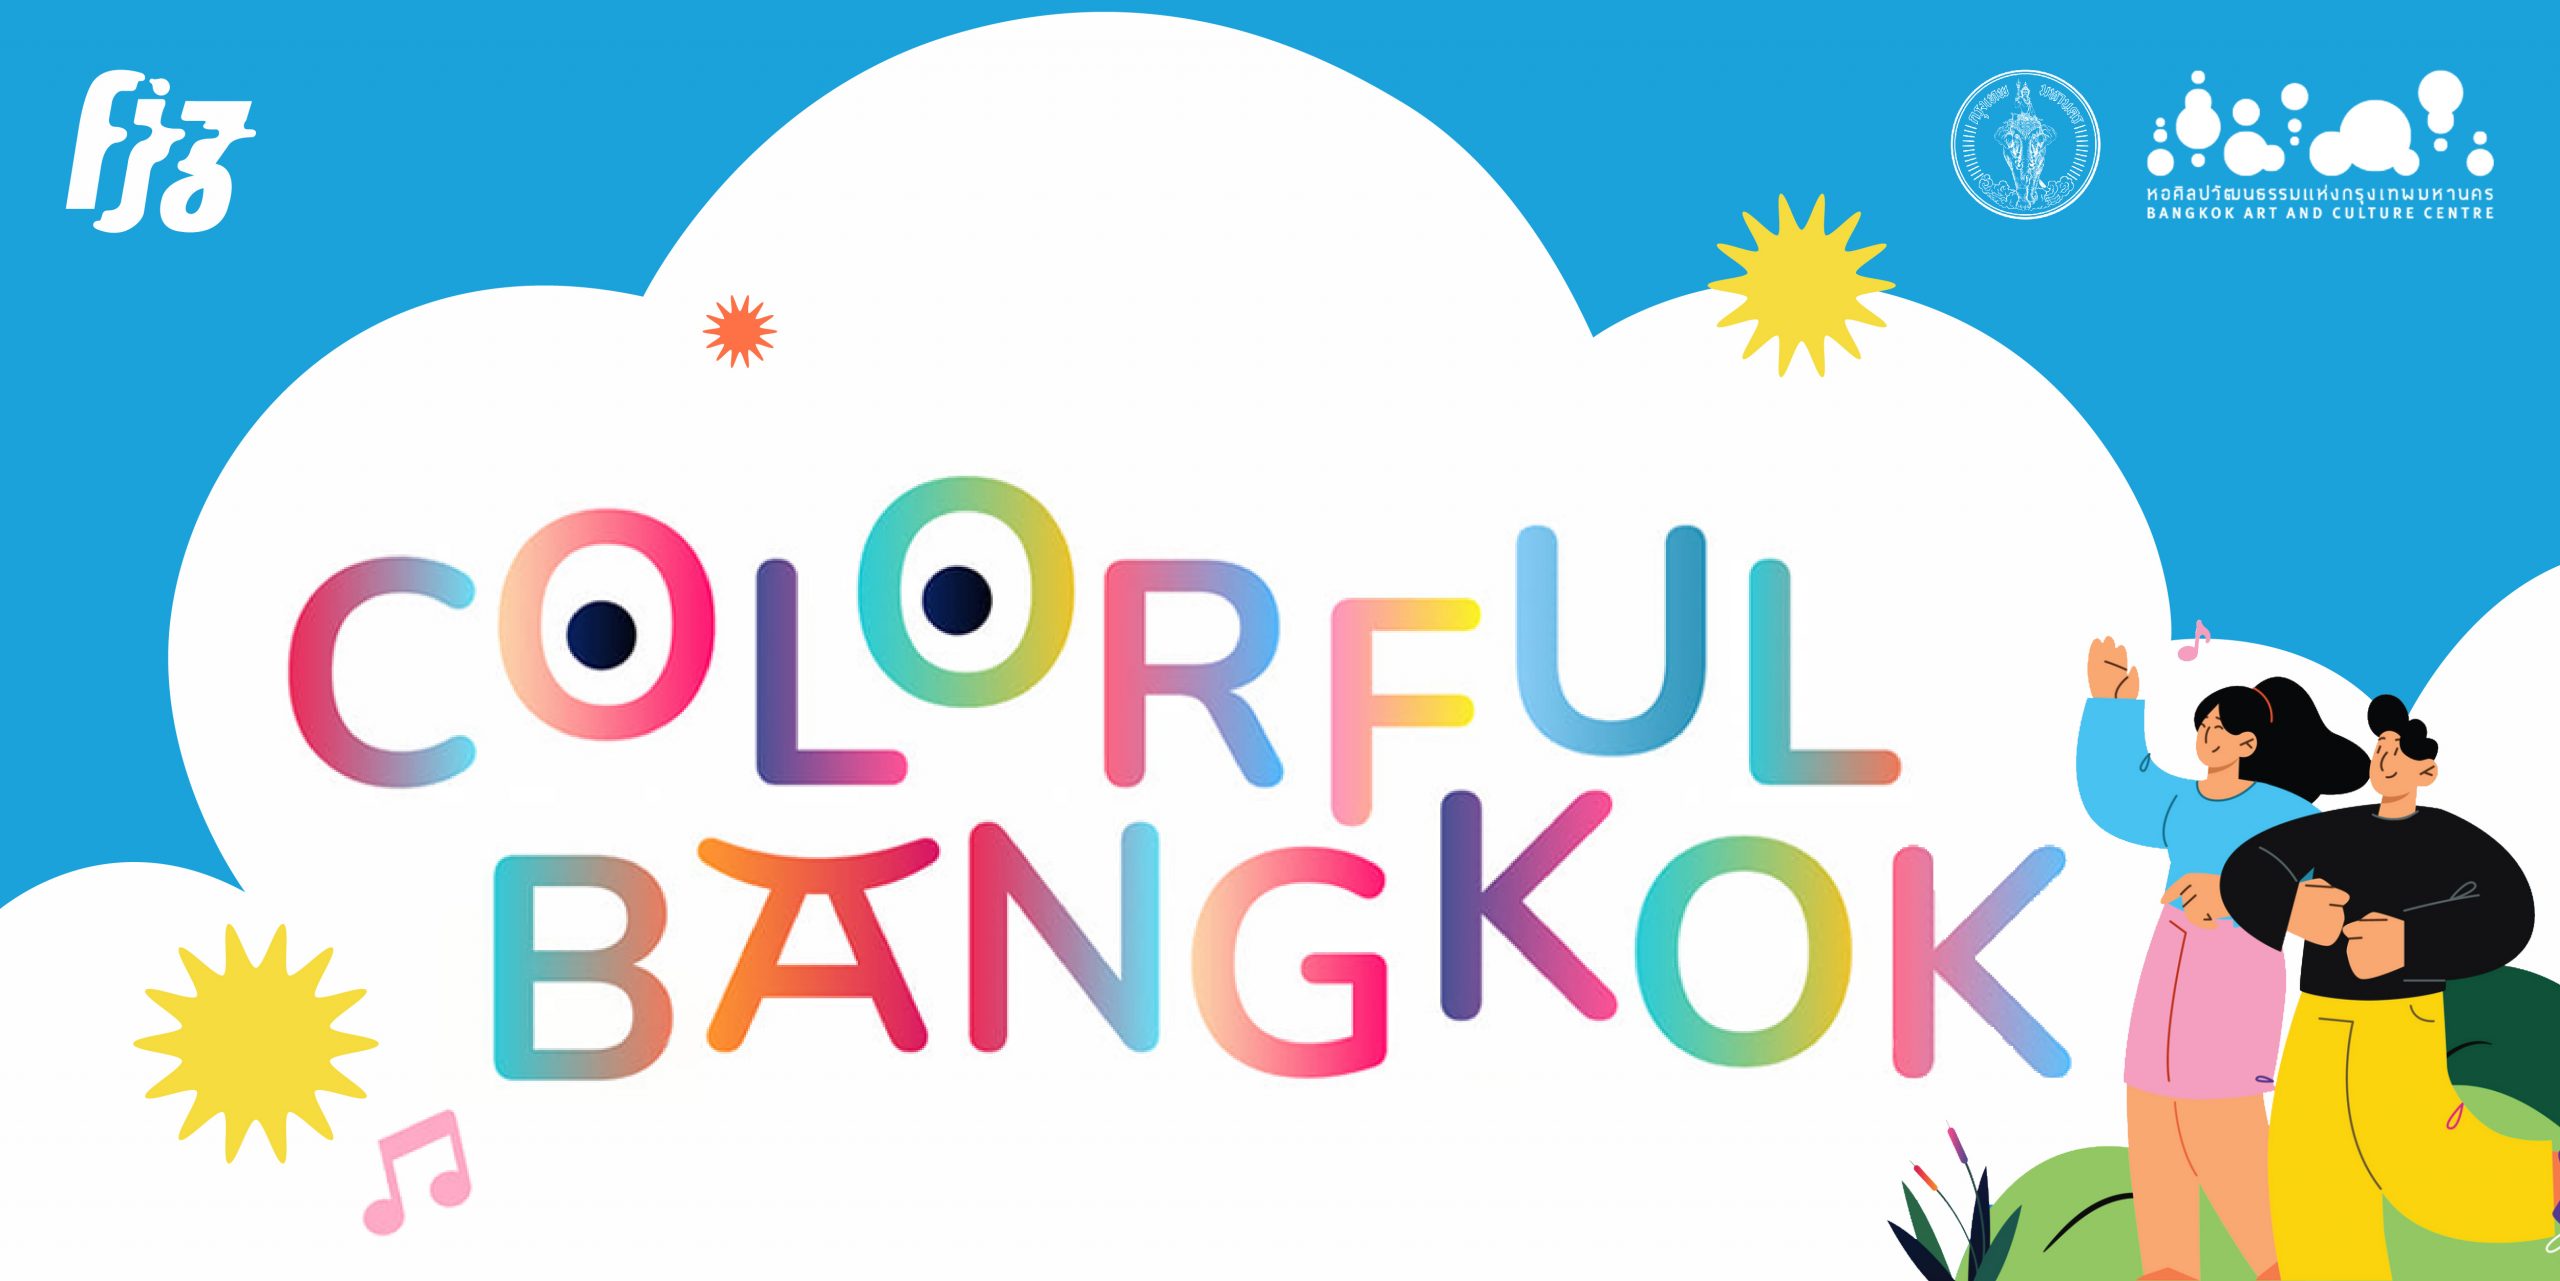 'Colourful Bangkok' ต่อจากนี้ศิลปะ แสงสี ดนตรีจะมีทั่วกรุงเทพฯ!